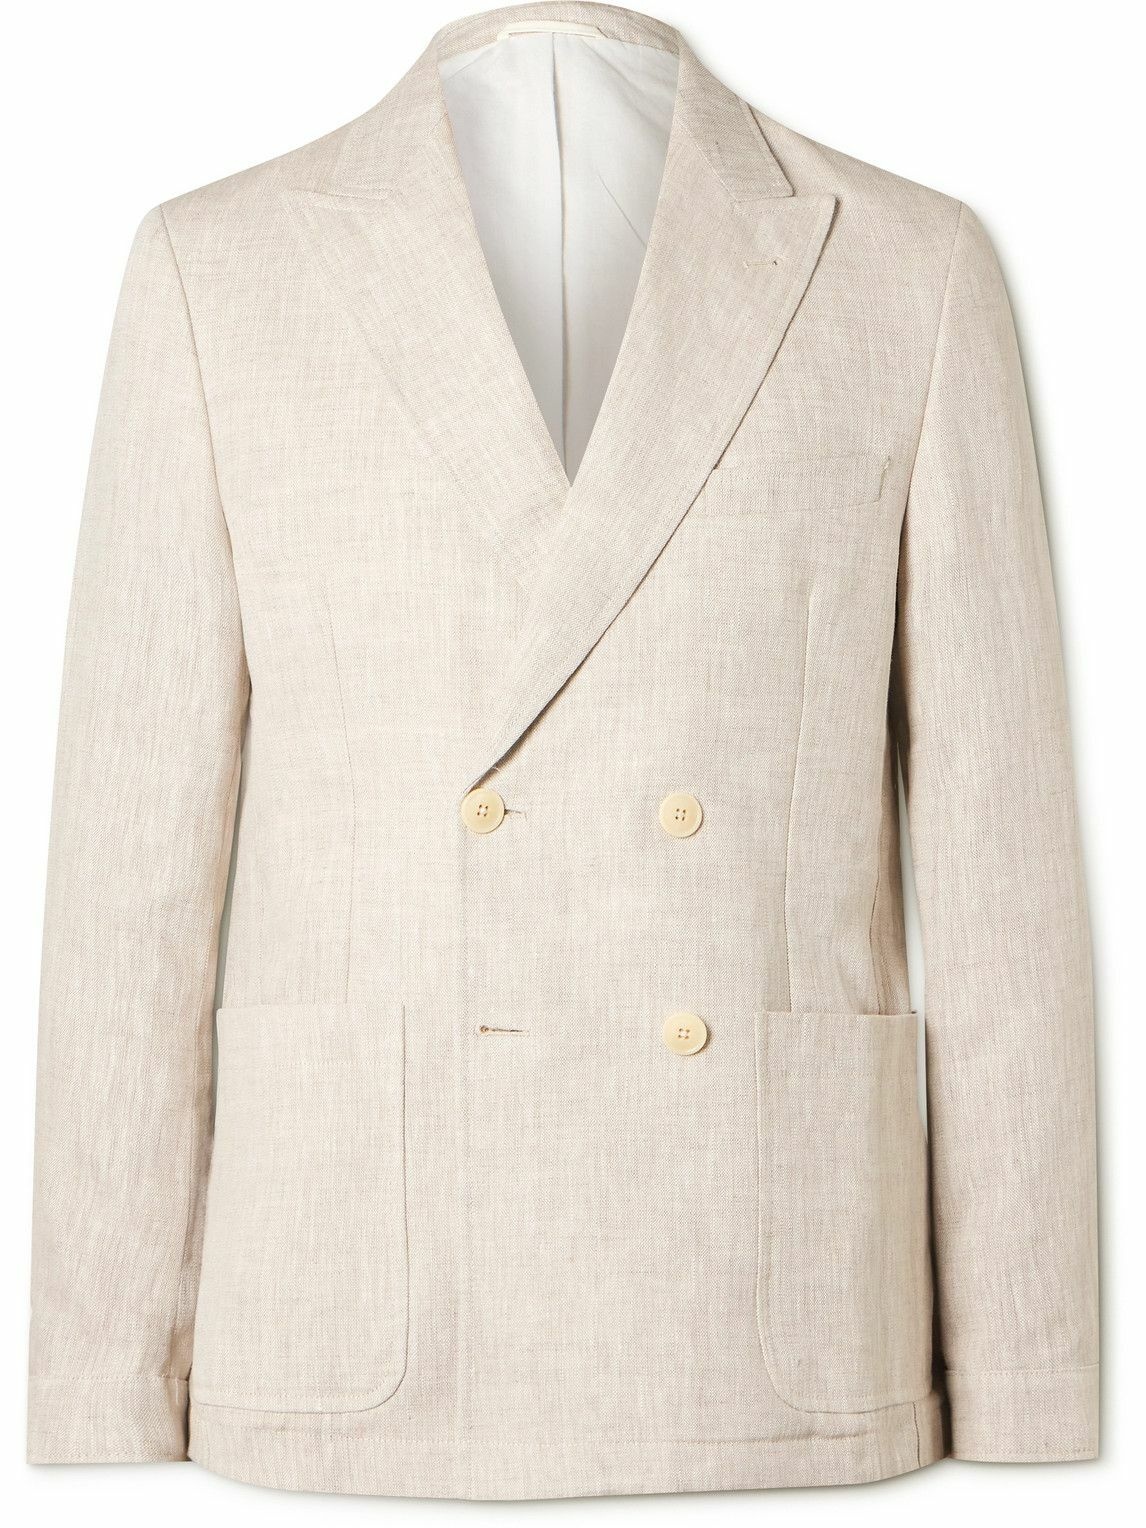 Oliver Spencer - Double-Breasted Linen Suit Jacket - Neutrals Oliver ...